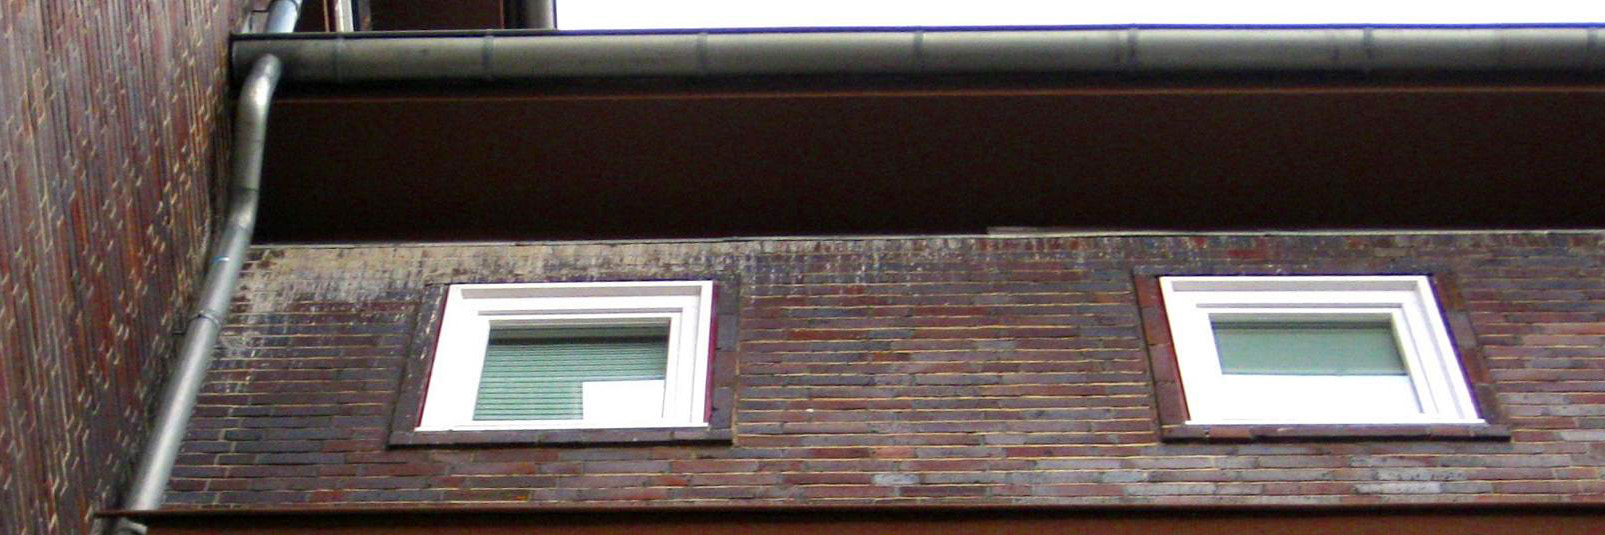 Taubenkot an der Fassade eines Mehrfamilienhauses in Hannover